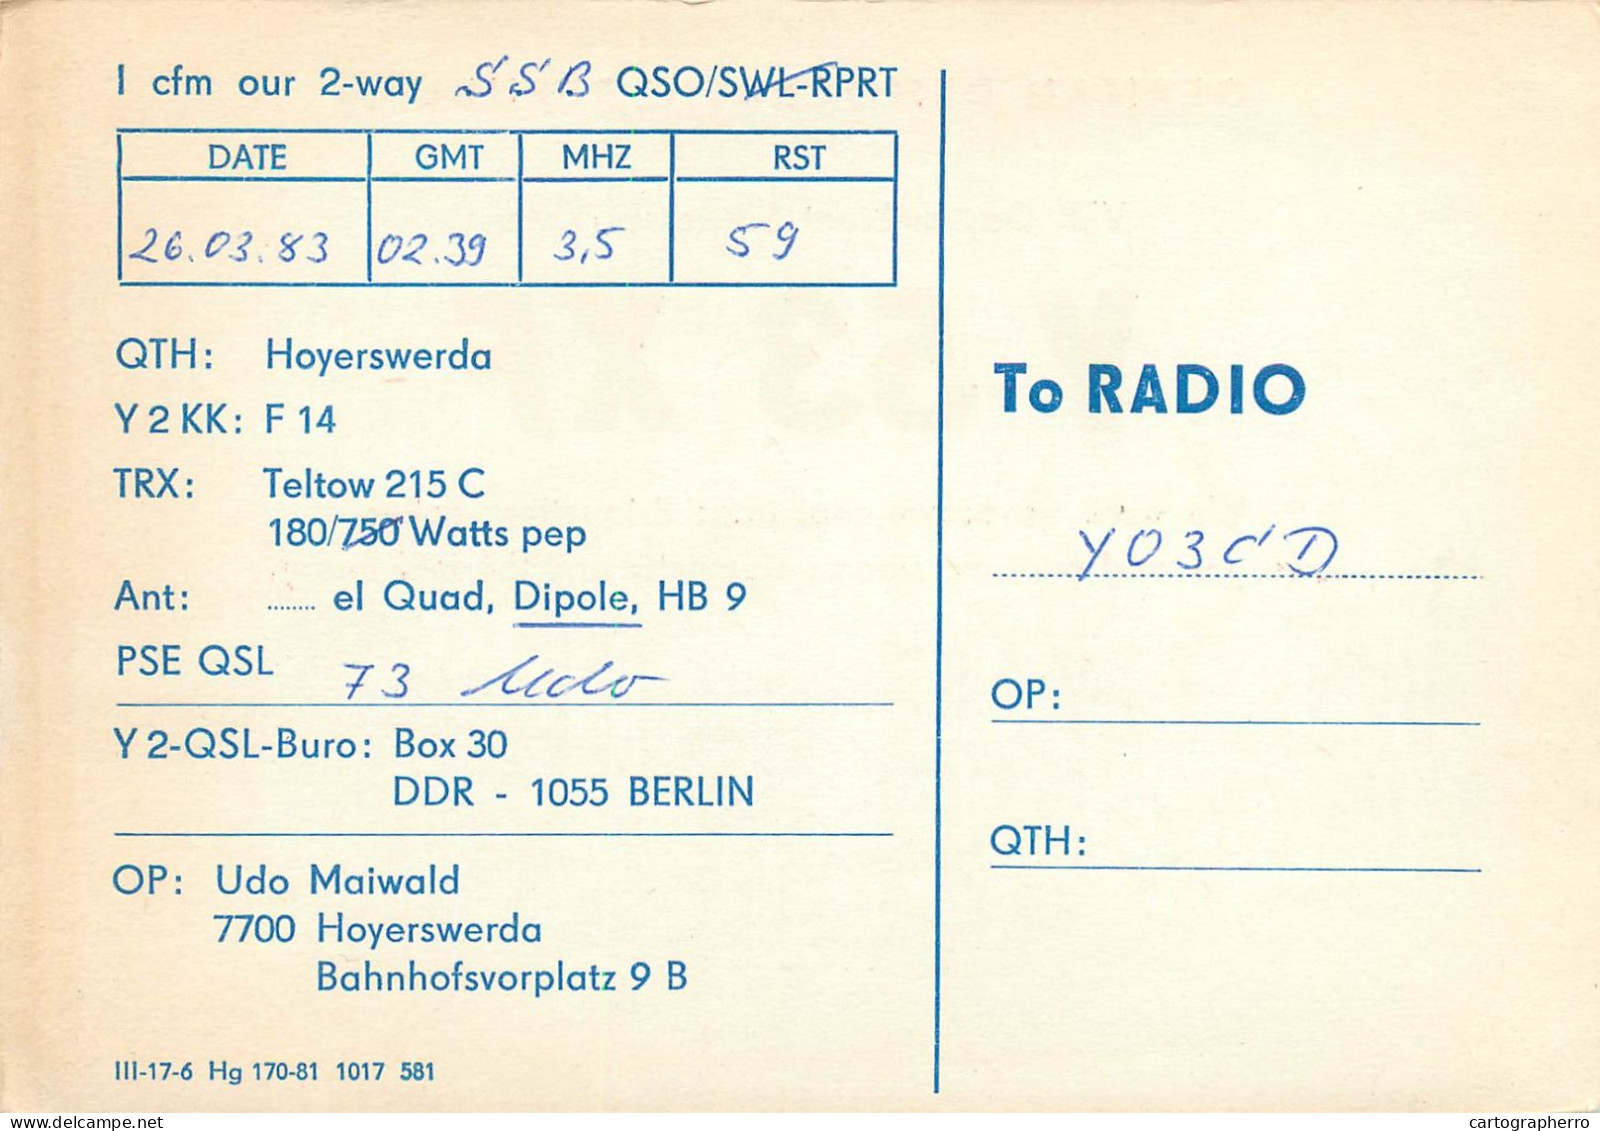 German Democtaric Republic Radio Amateur QSL Card Y53XF Y03CD 1983 - Radio Amatoriale